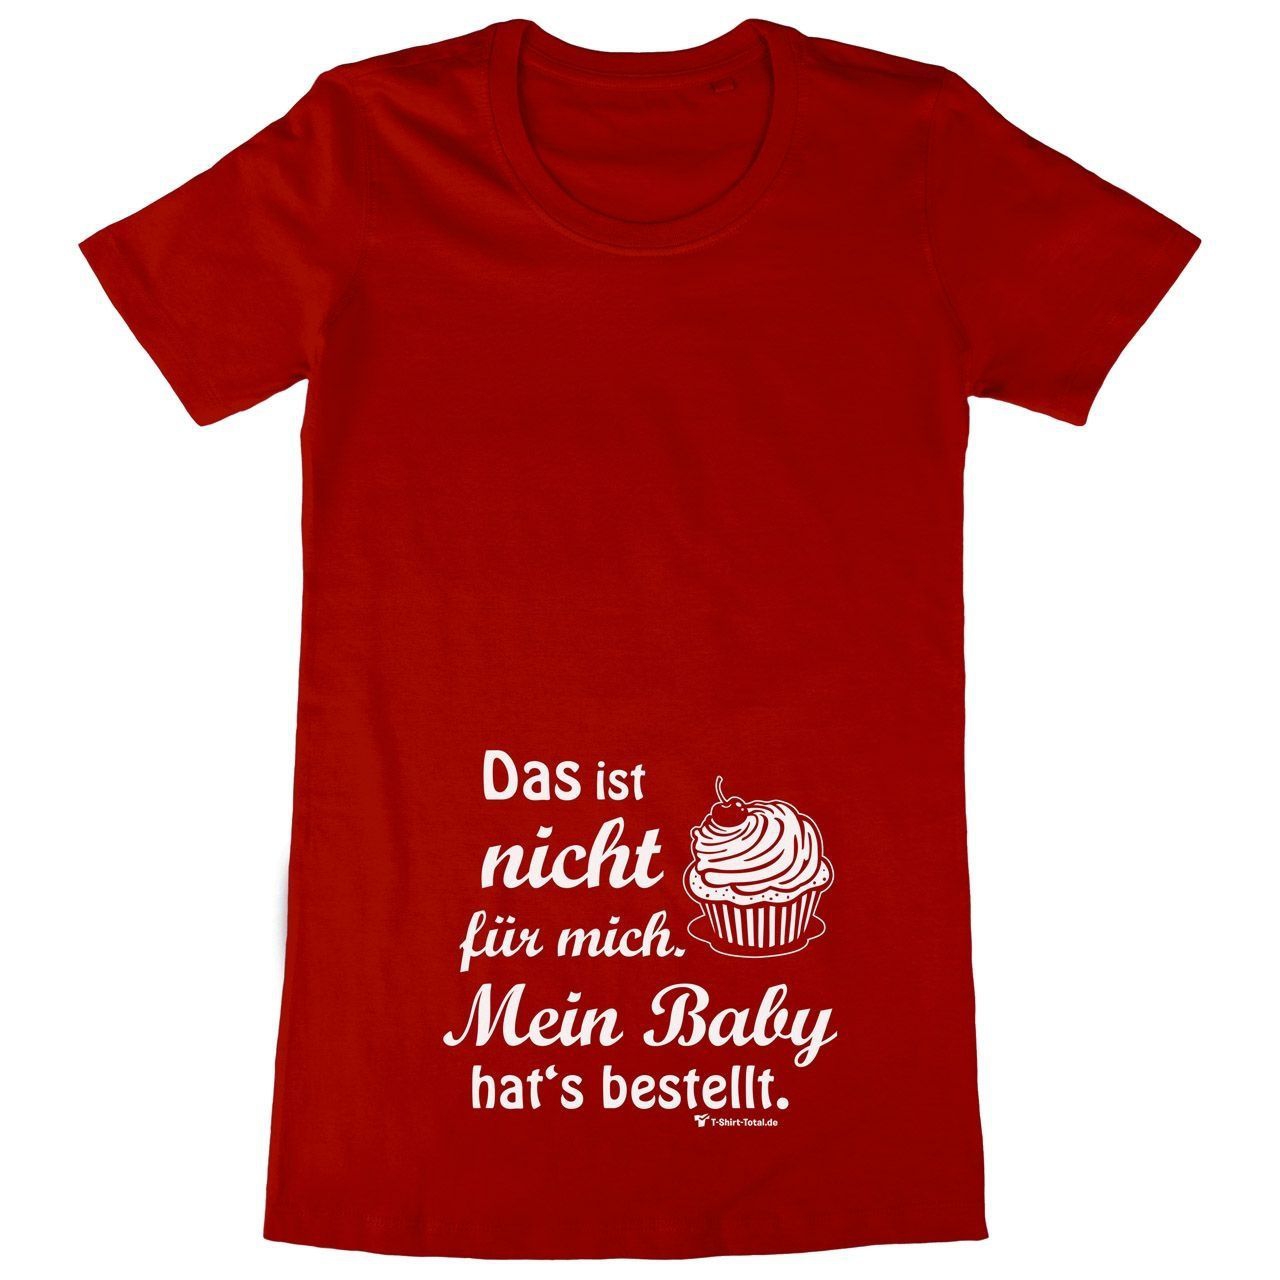 Baby hats bestellt Woman Long Shirt rot Large